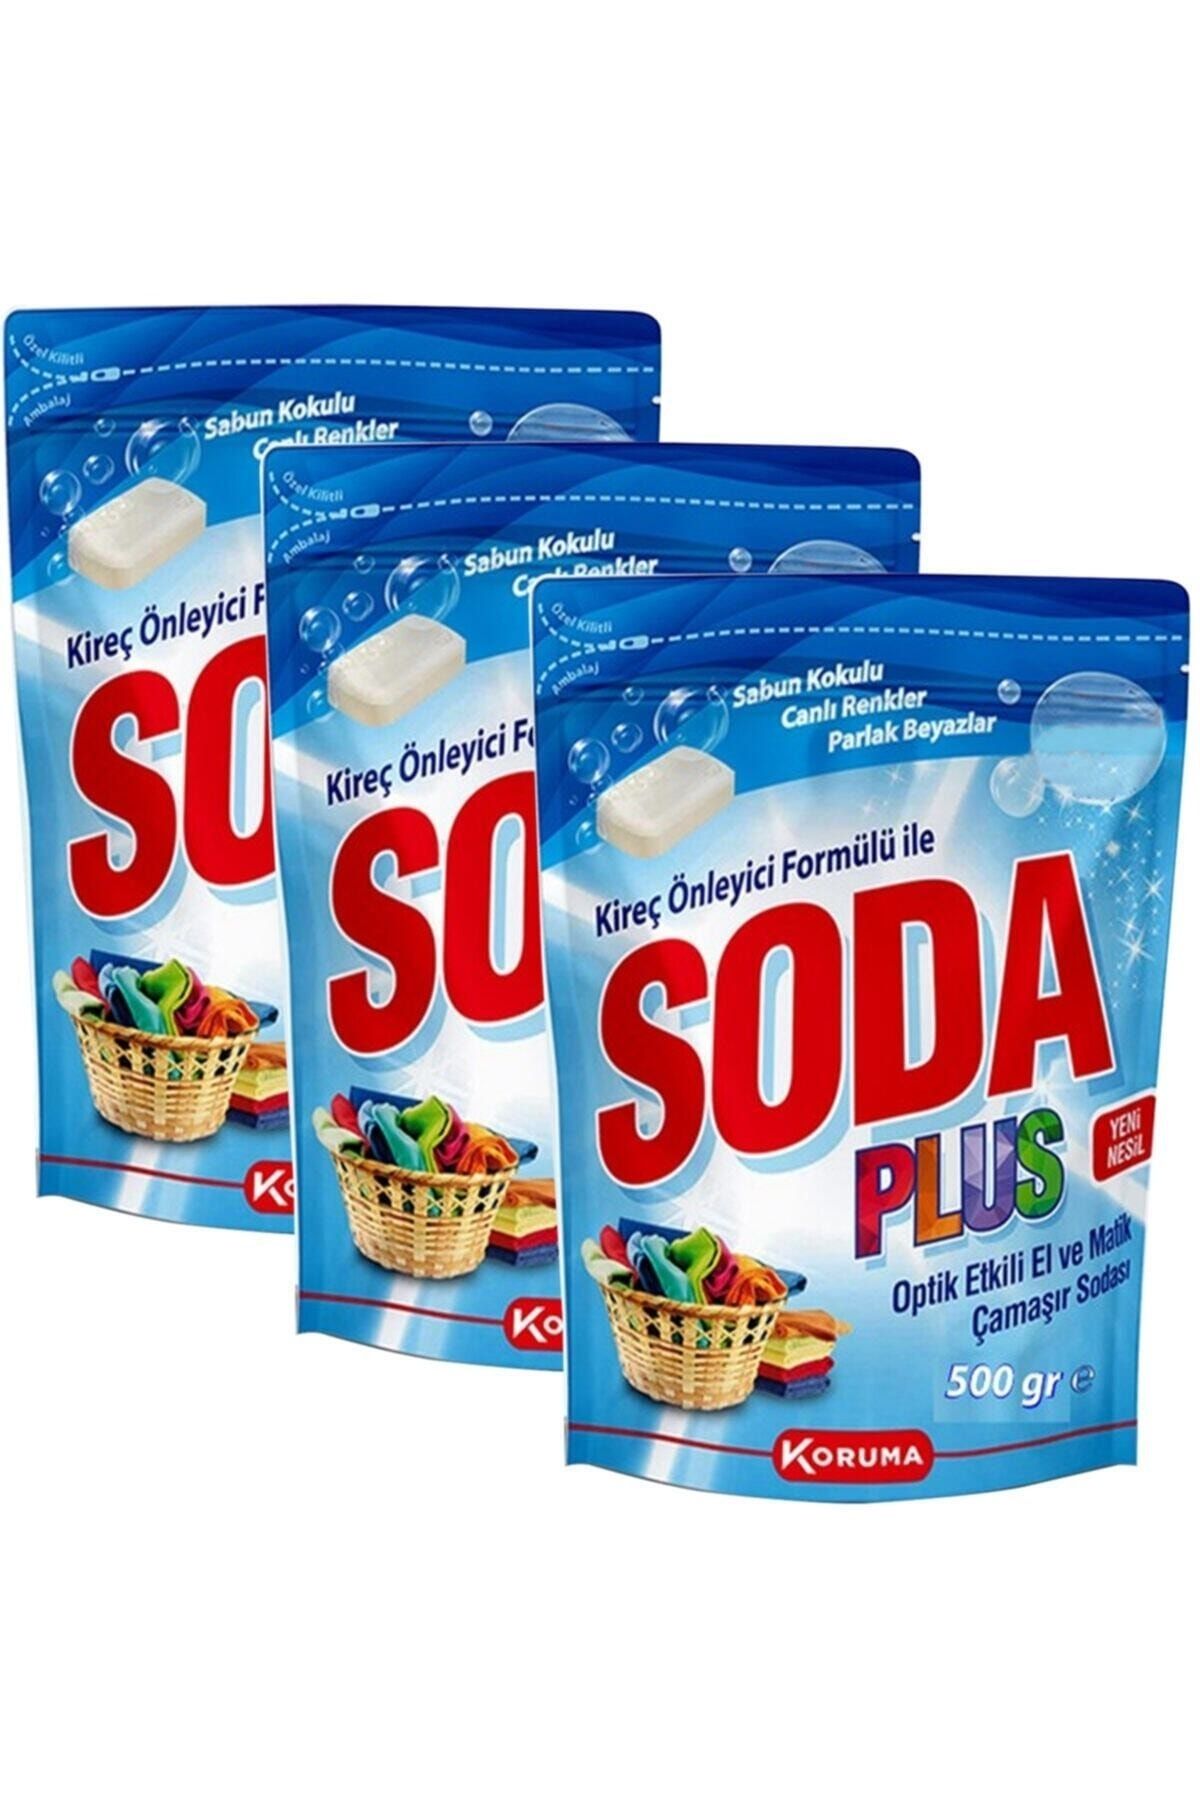 KORUMA Soda Plus Optik Etkili El ve Matik Çamaşır Sodası 3 x 500 gr